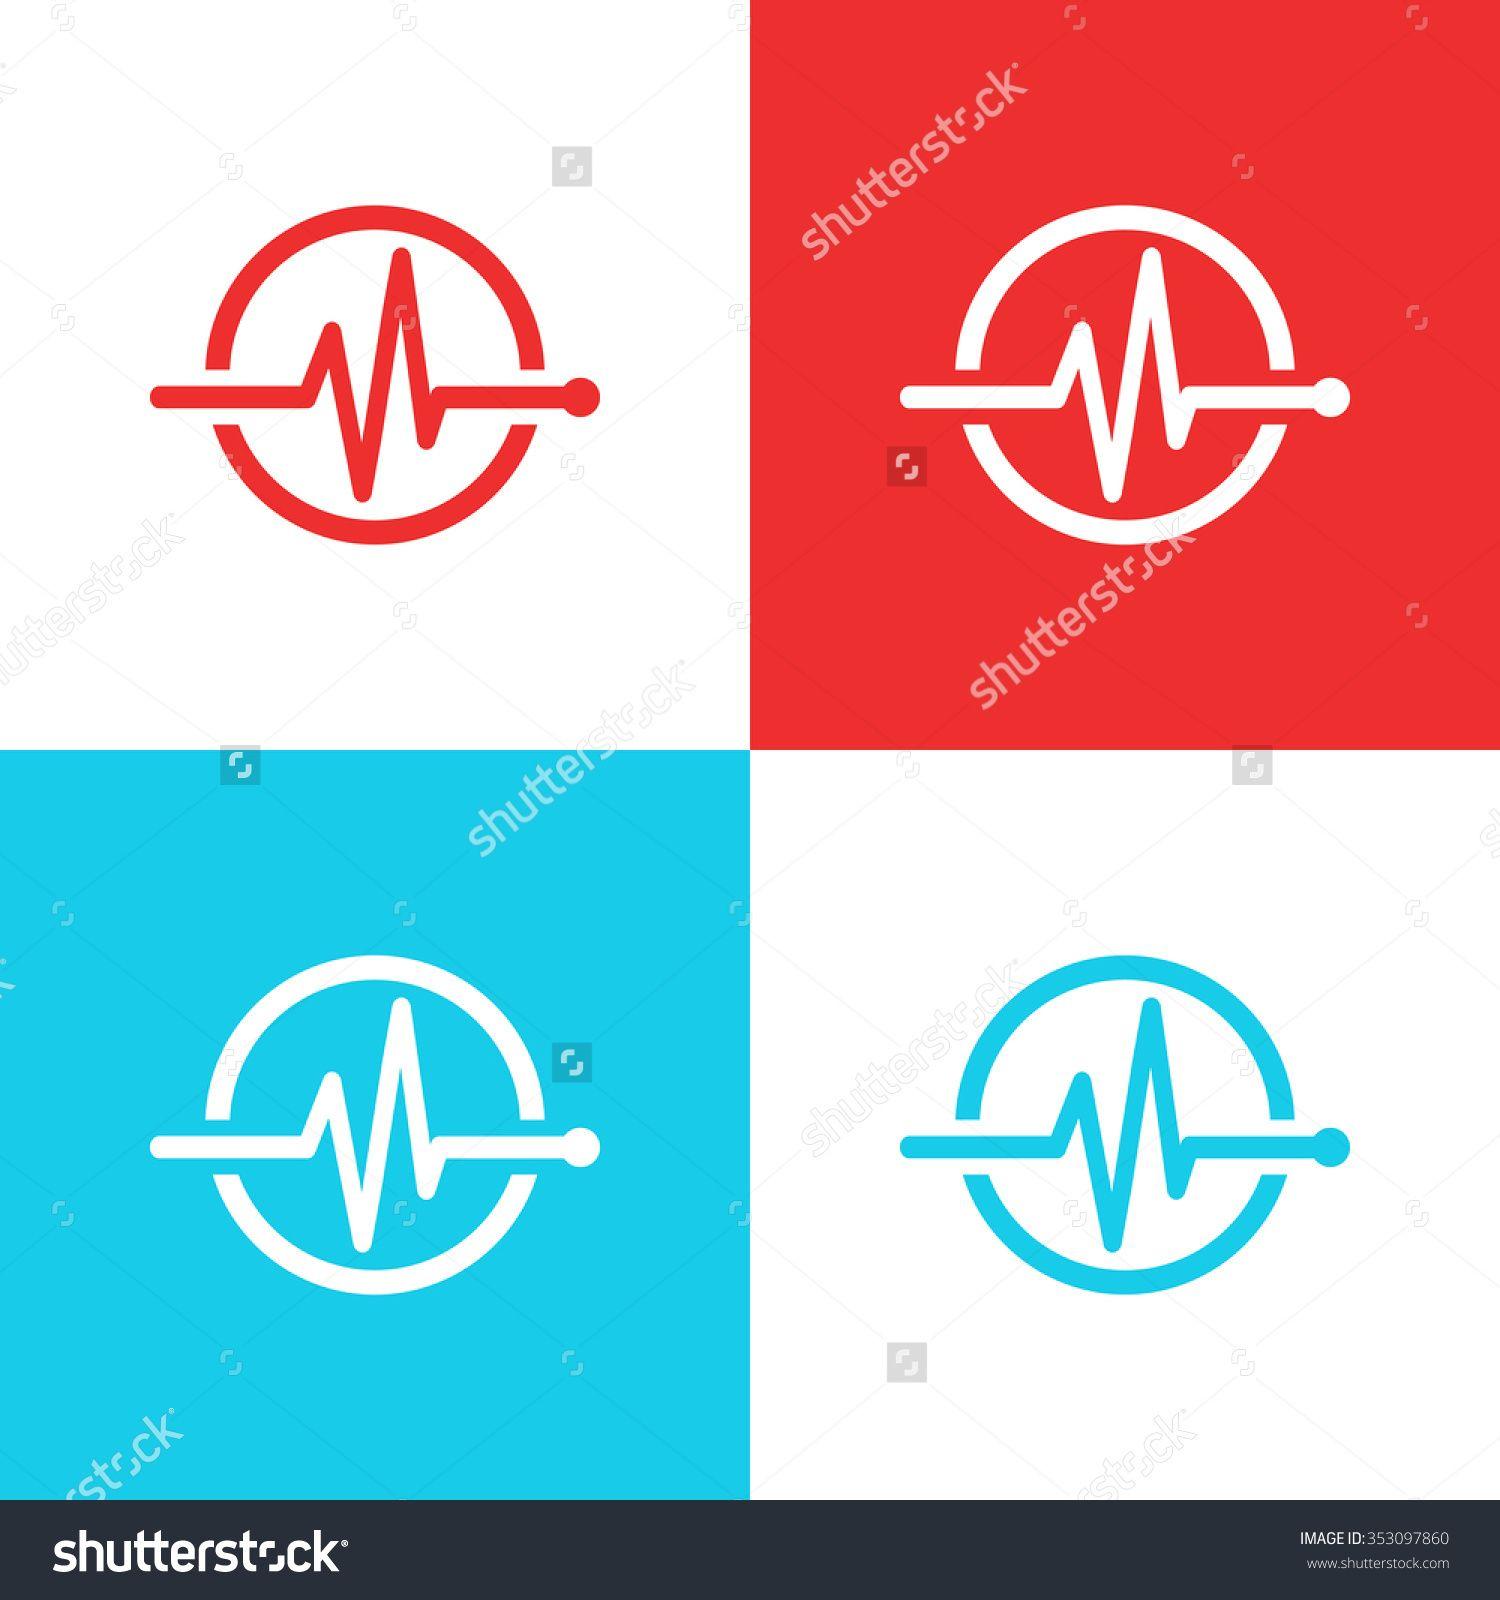 Stock Medical Logo - Medical Logo Concept Health Care Design Stock Vector 353097860 ...